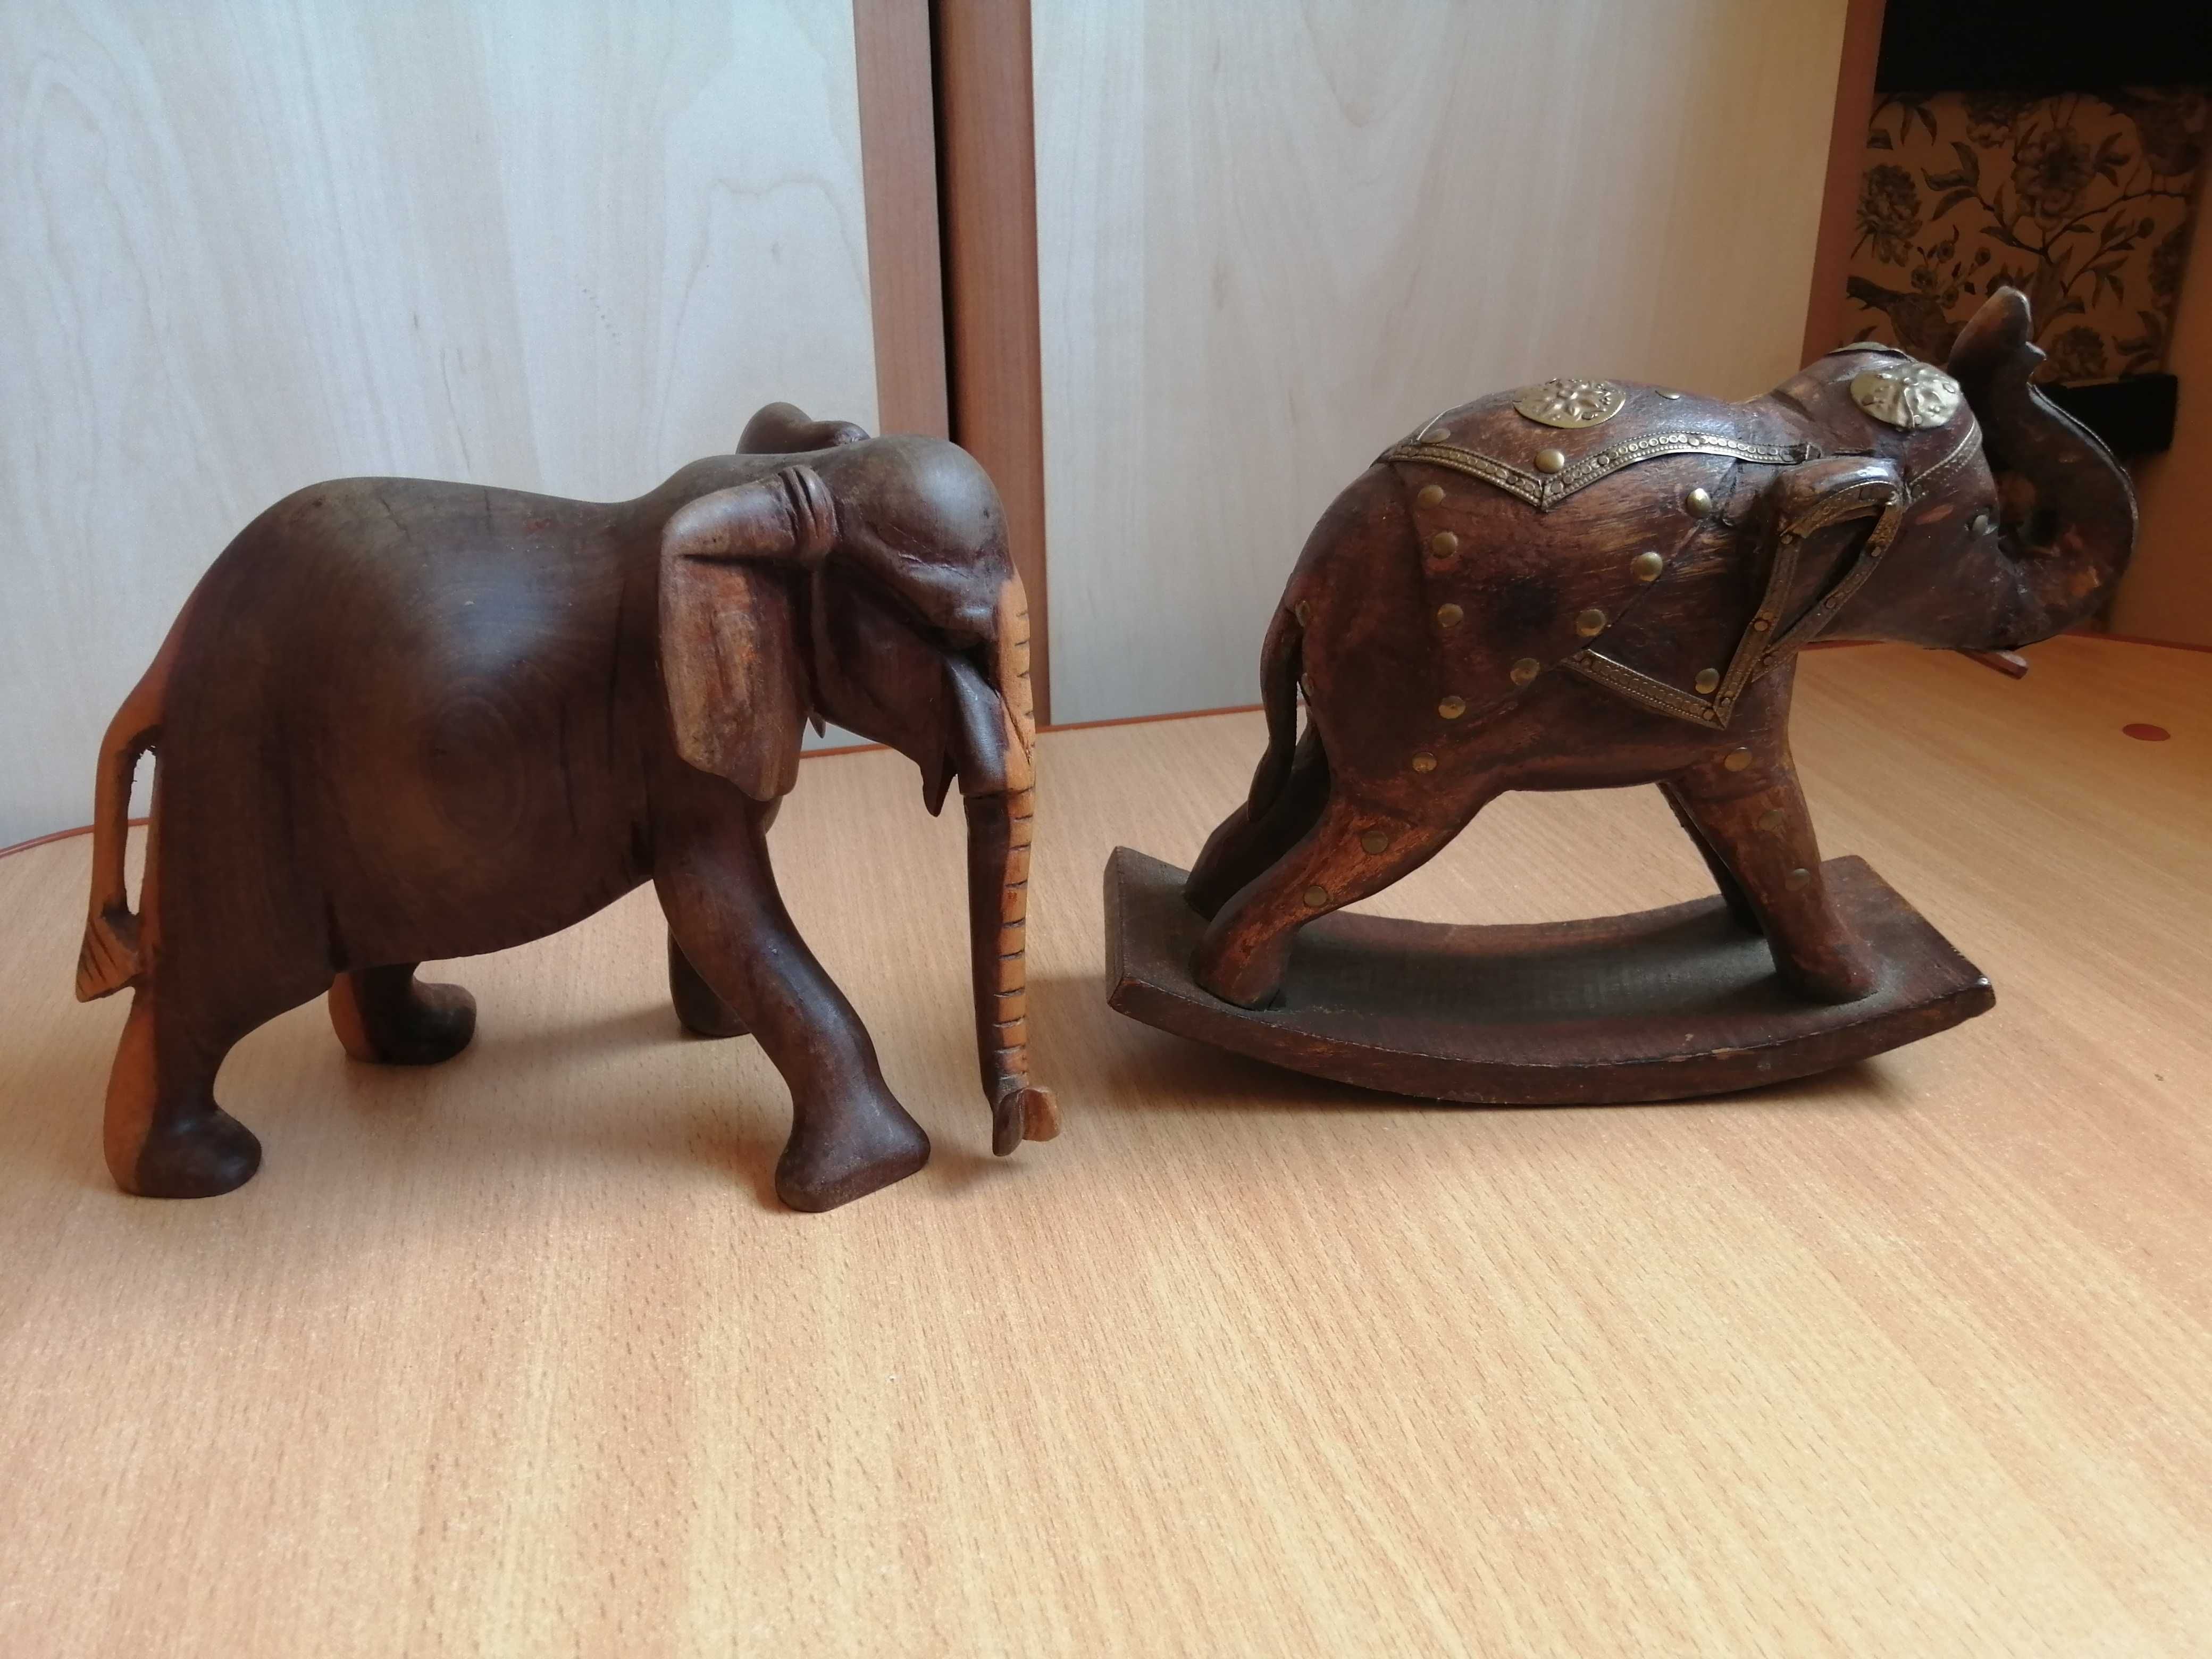 Elefanți din lemn